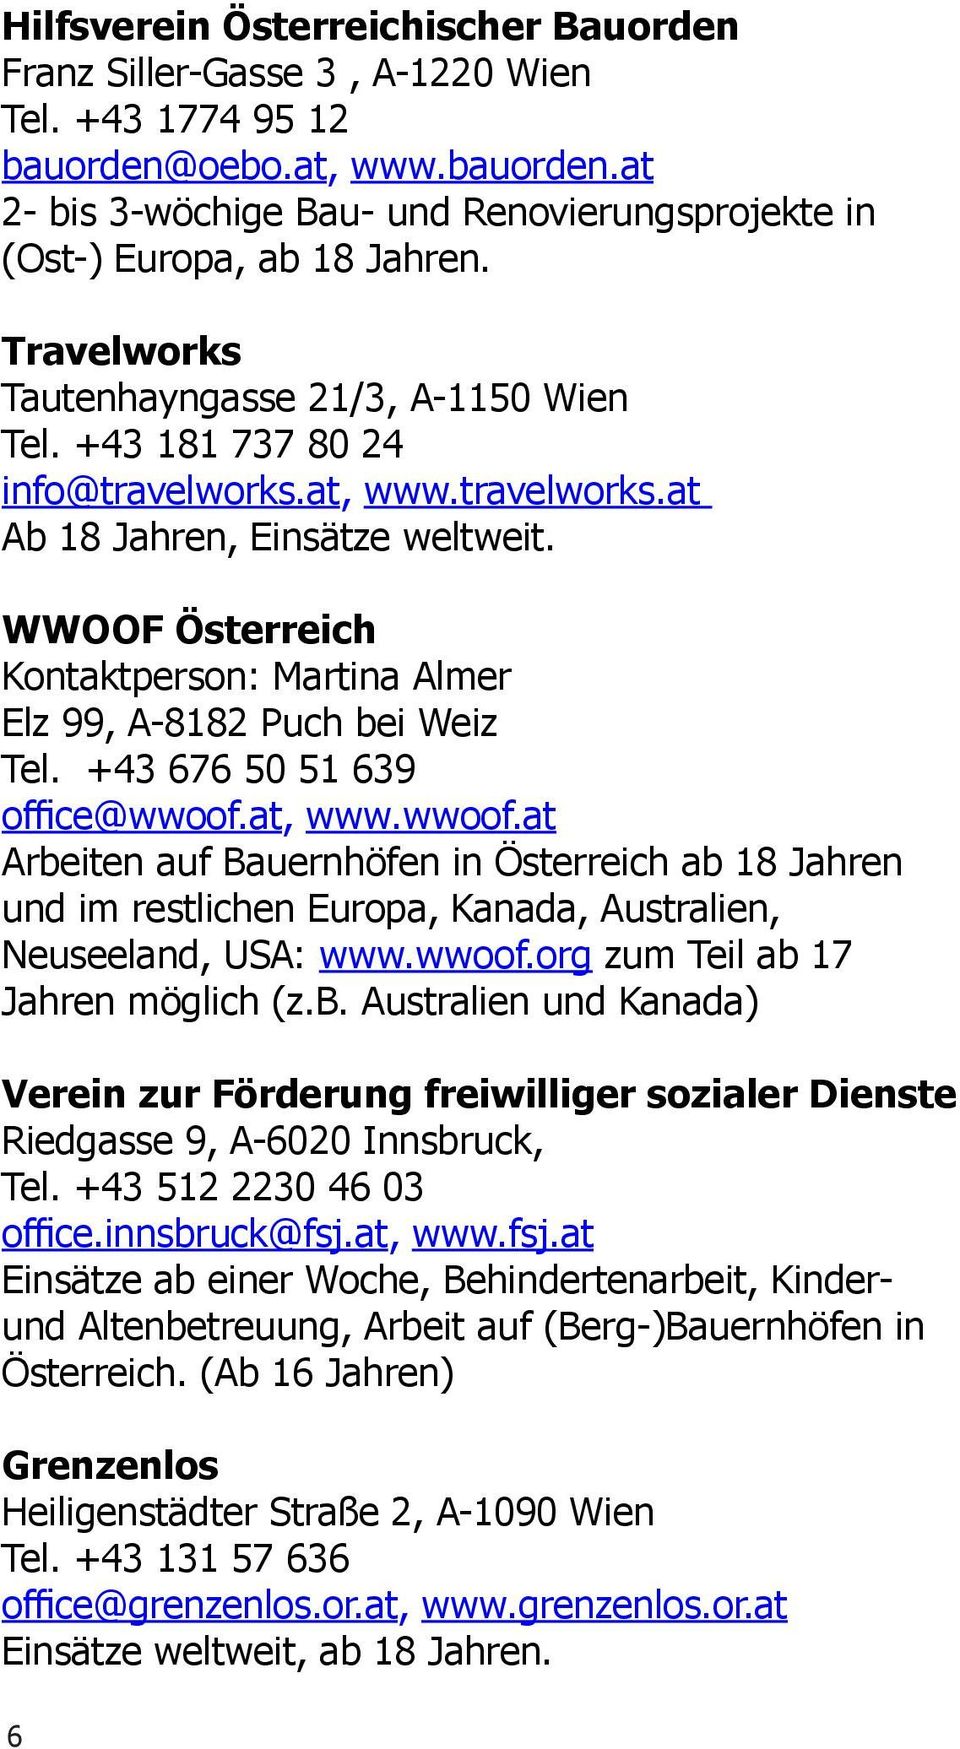 WWOOF Österreich Kontaktperson: Martina Almer Elz 99, A-8182 Puch bei Weiz Tel. +43 676 50 51 639 office@wwoof.